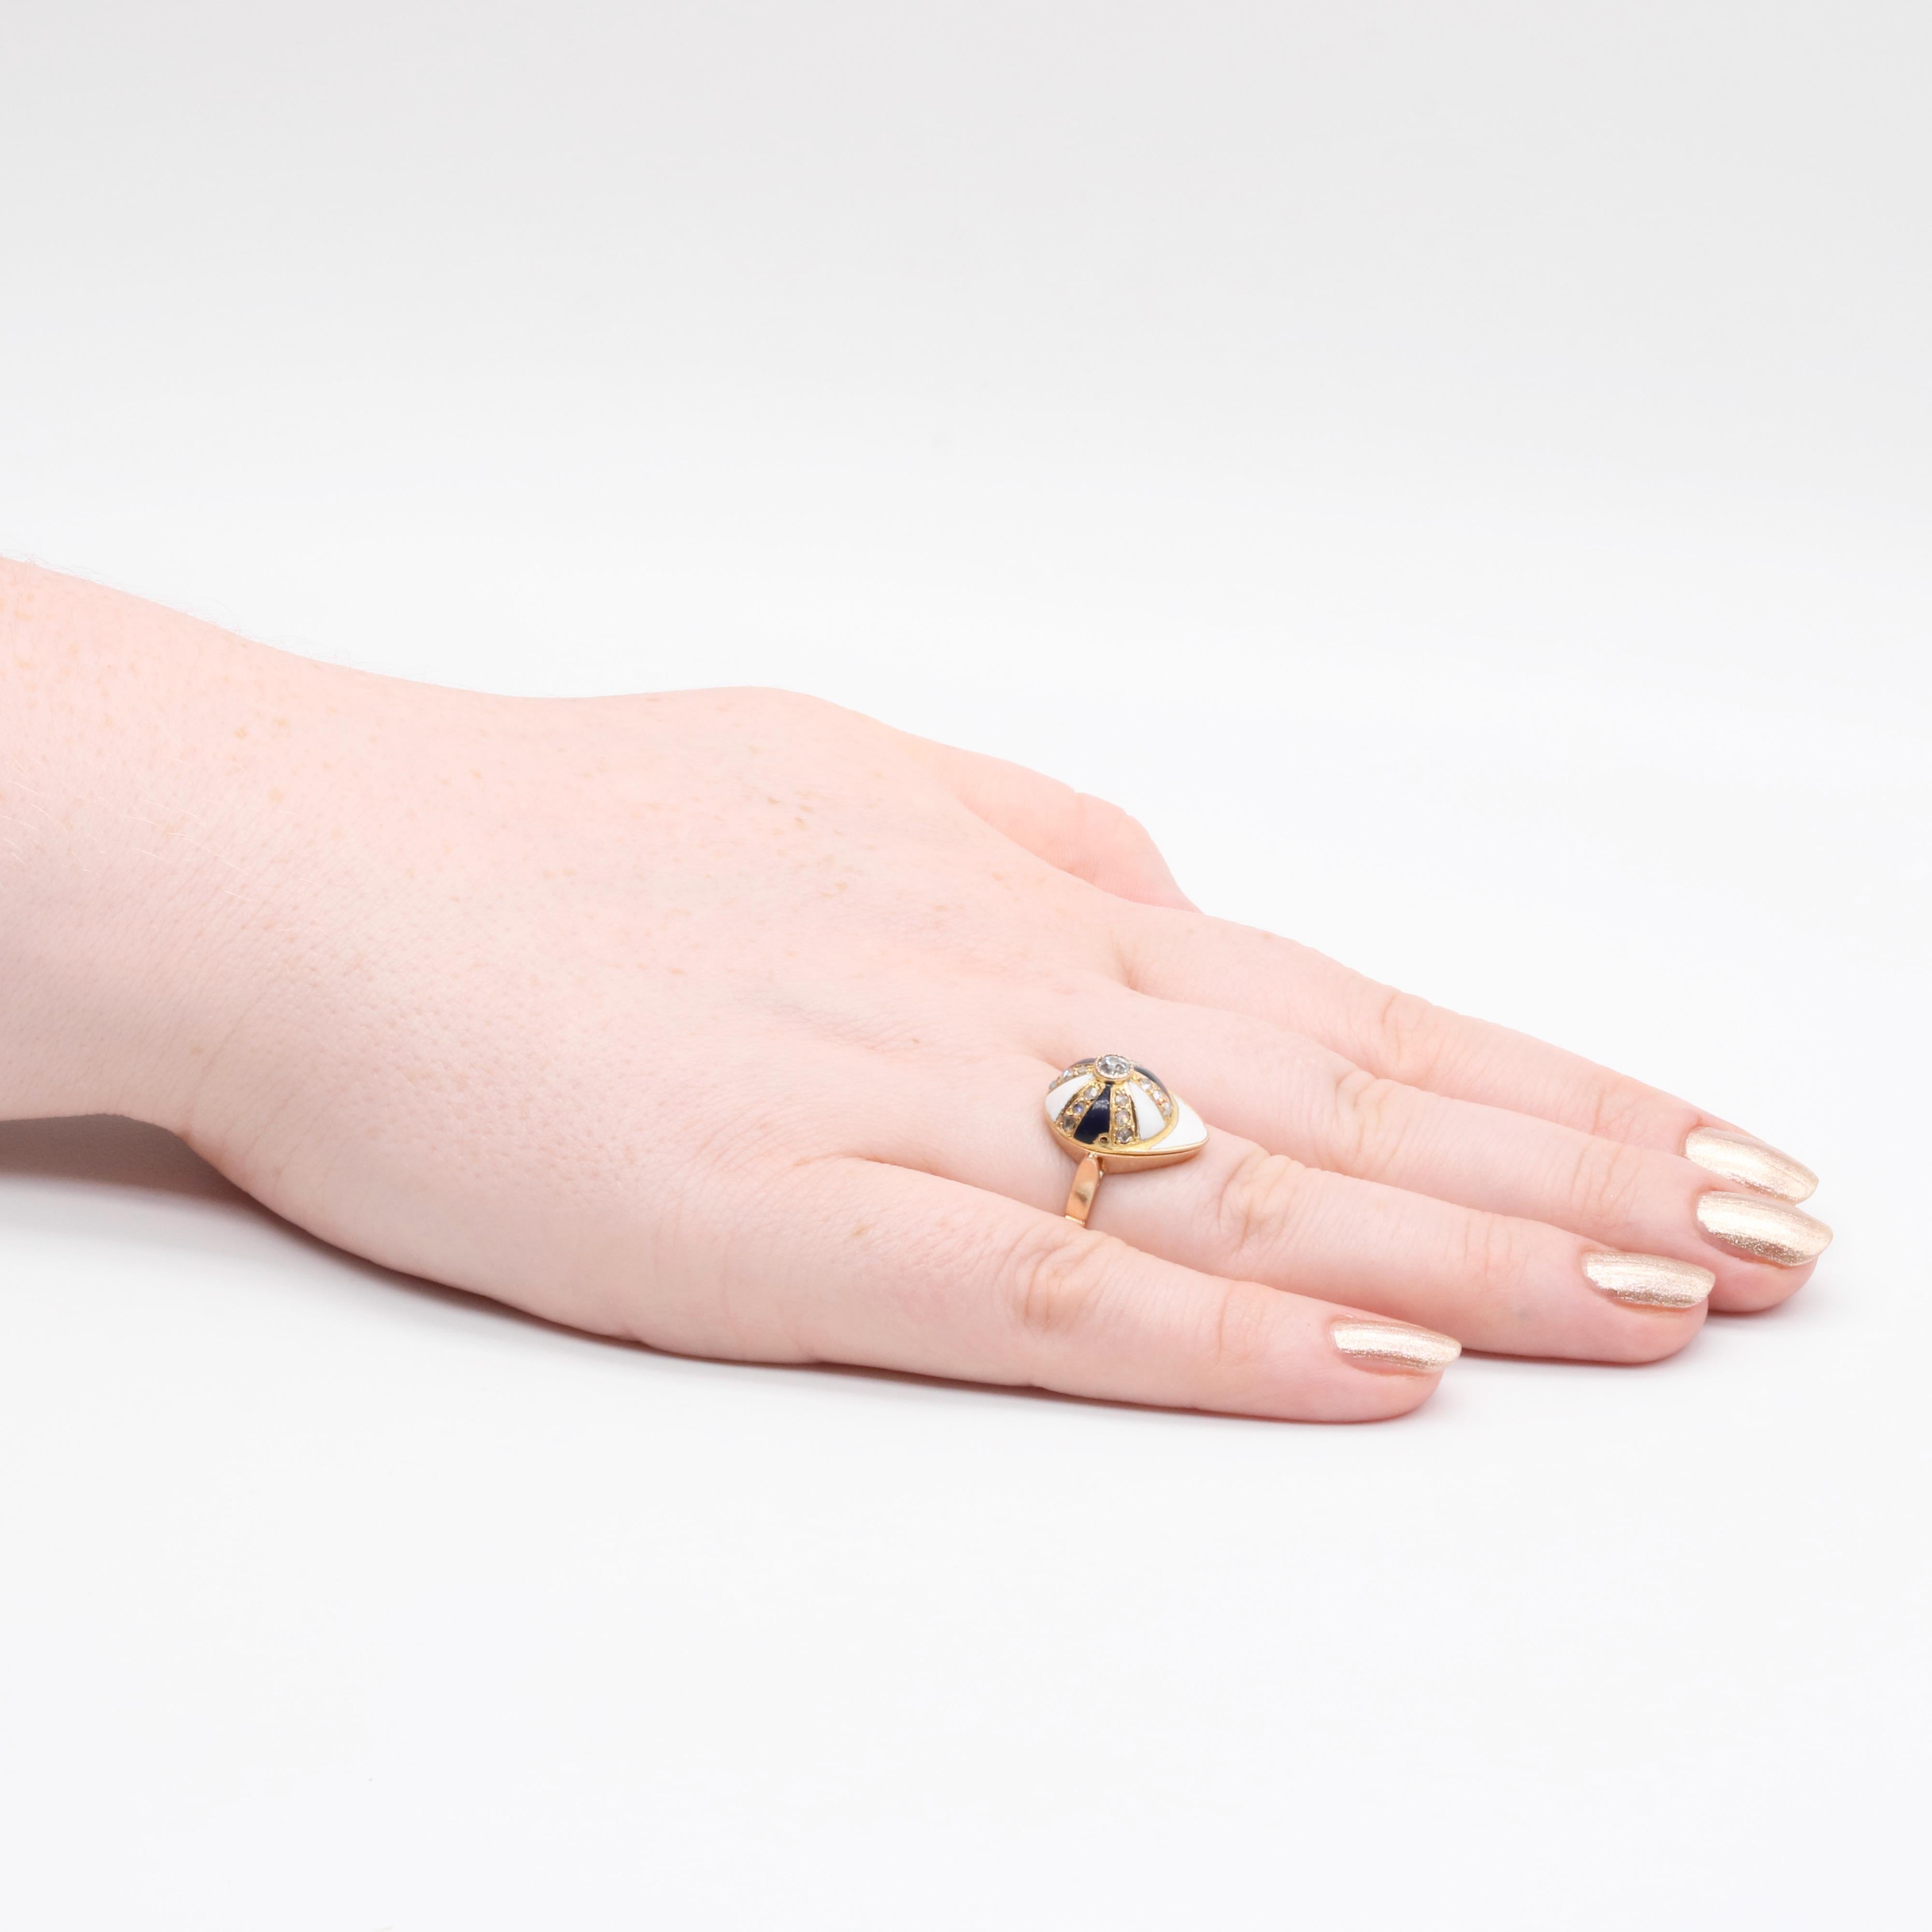 Antiker Ring aus Gelbgold mit Diamanten und Emaille, bestehend aus einem Diamanten im Altschliff und achtzehn Diamanten im Rosenschliff, gefasst in 18 Karat Gelbgold und verziert mit blauer und weißer Emaille, an einem Band aus 18 Karat Gelbgold.